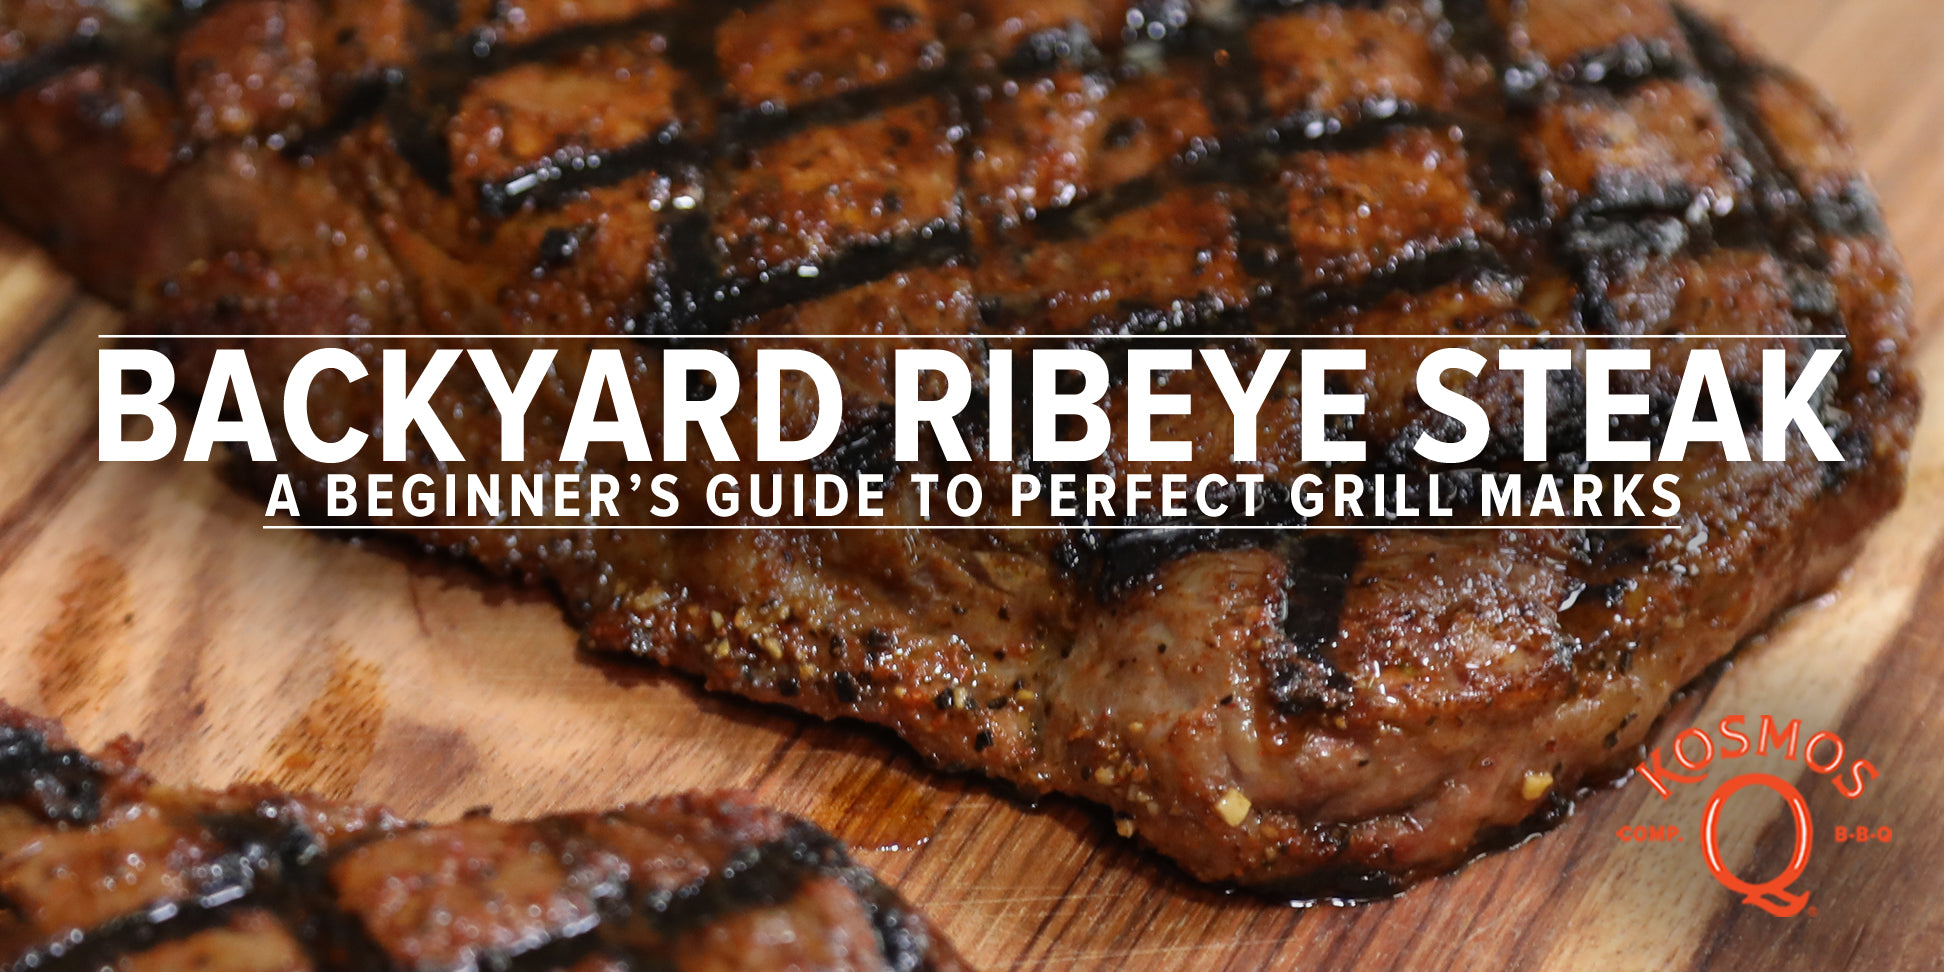 Backyard Ribeye Steak Recipe